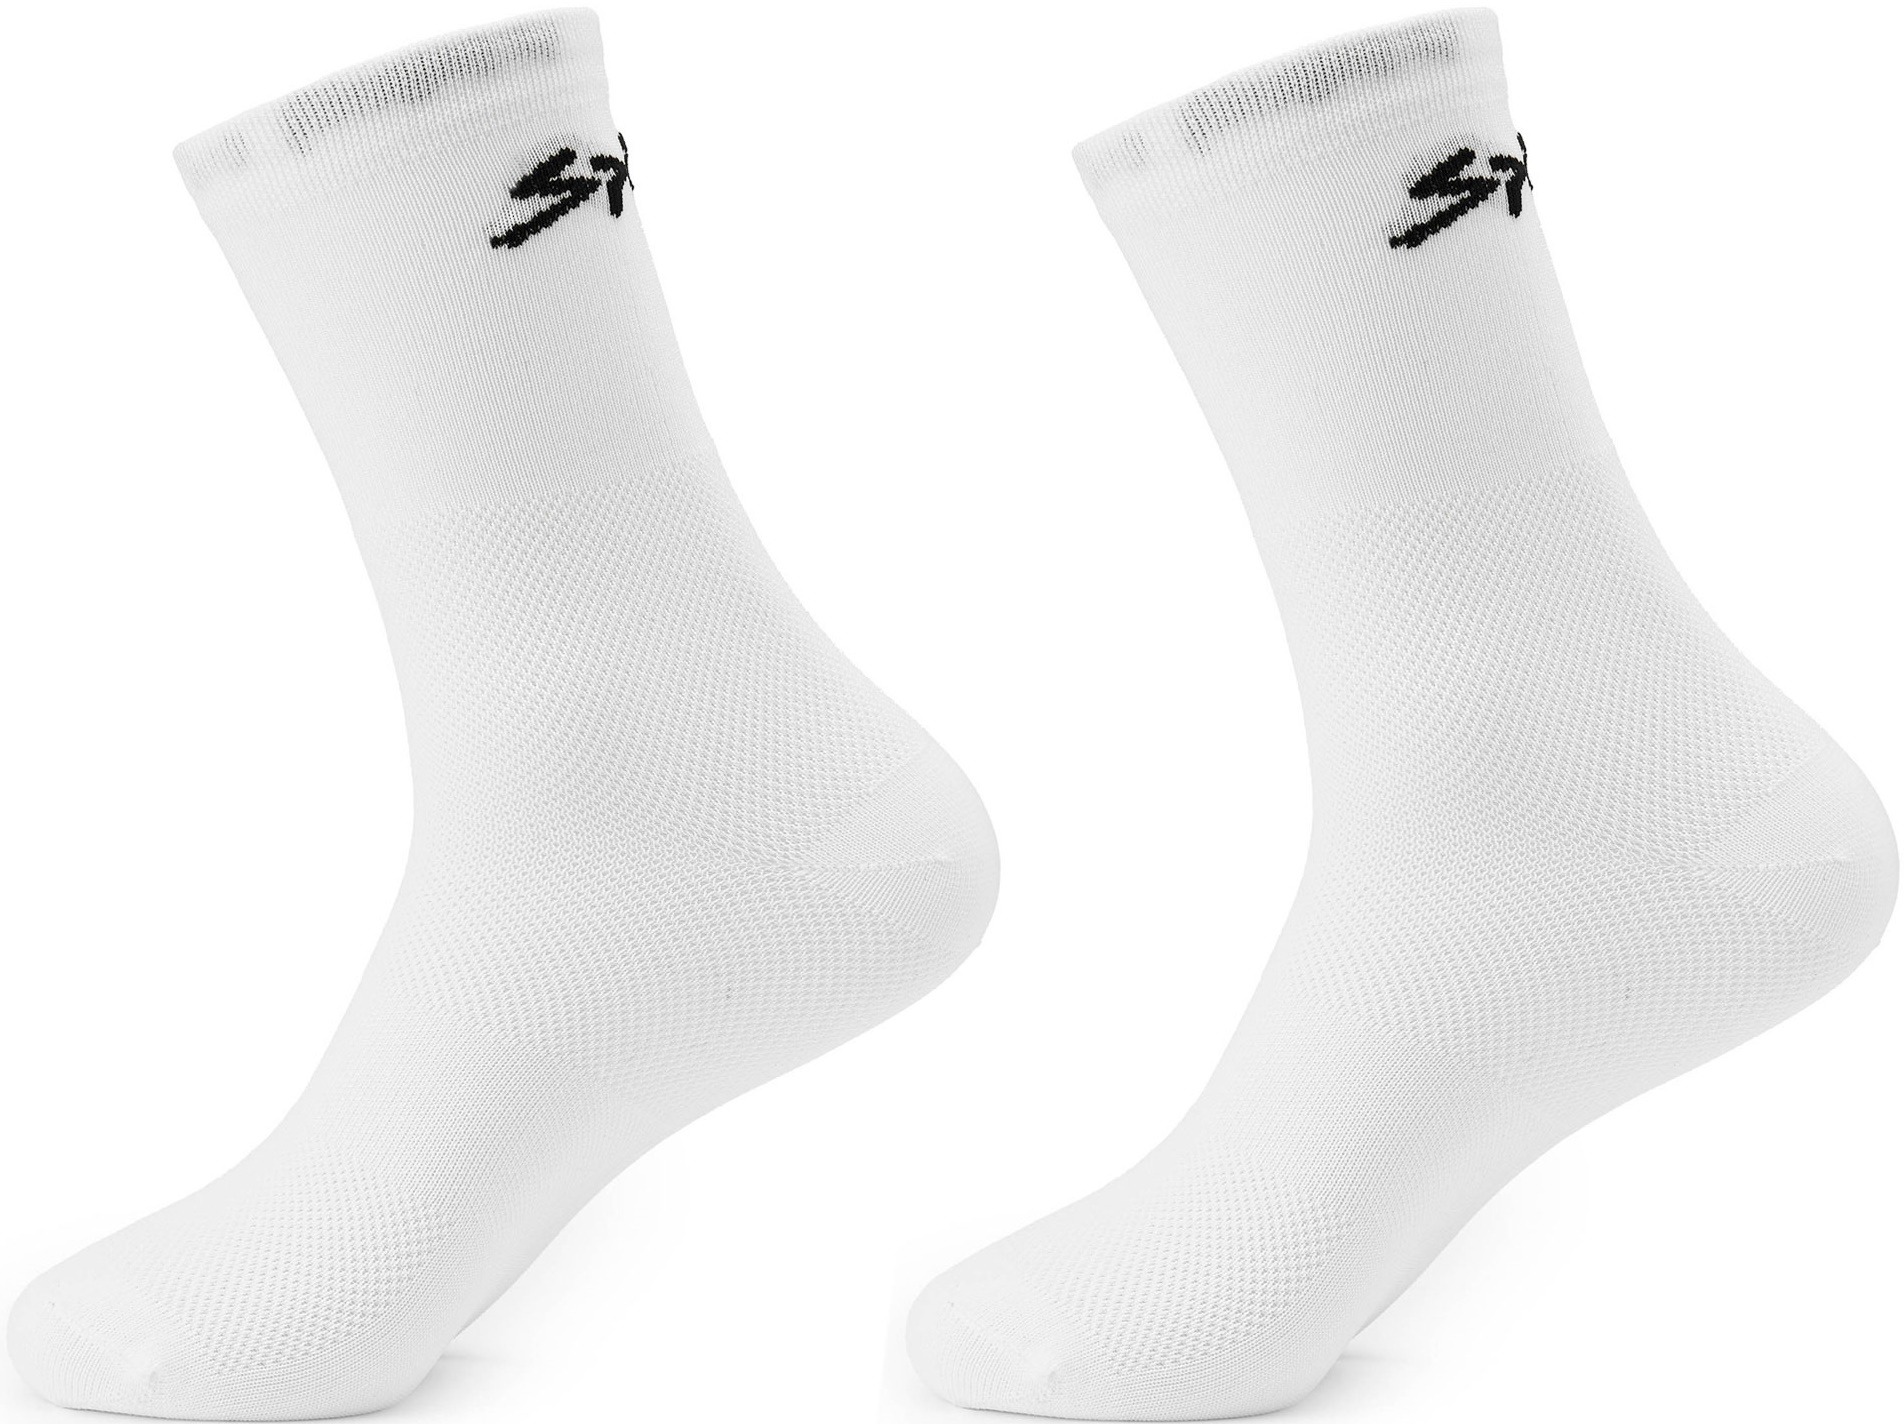 Шкарпетки Spiuk Anatomic білі р 40-43  (2 пари в упаковці)